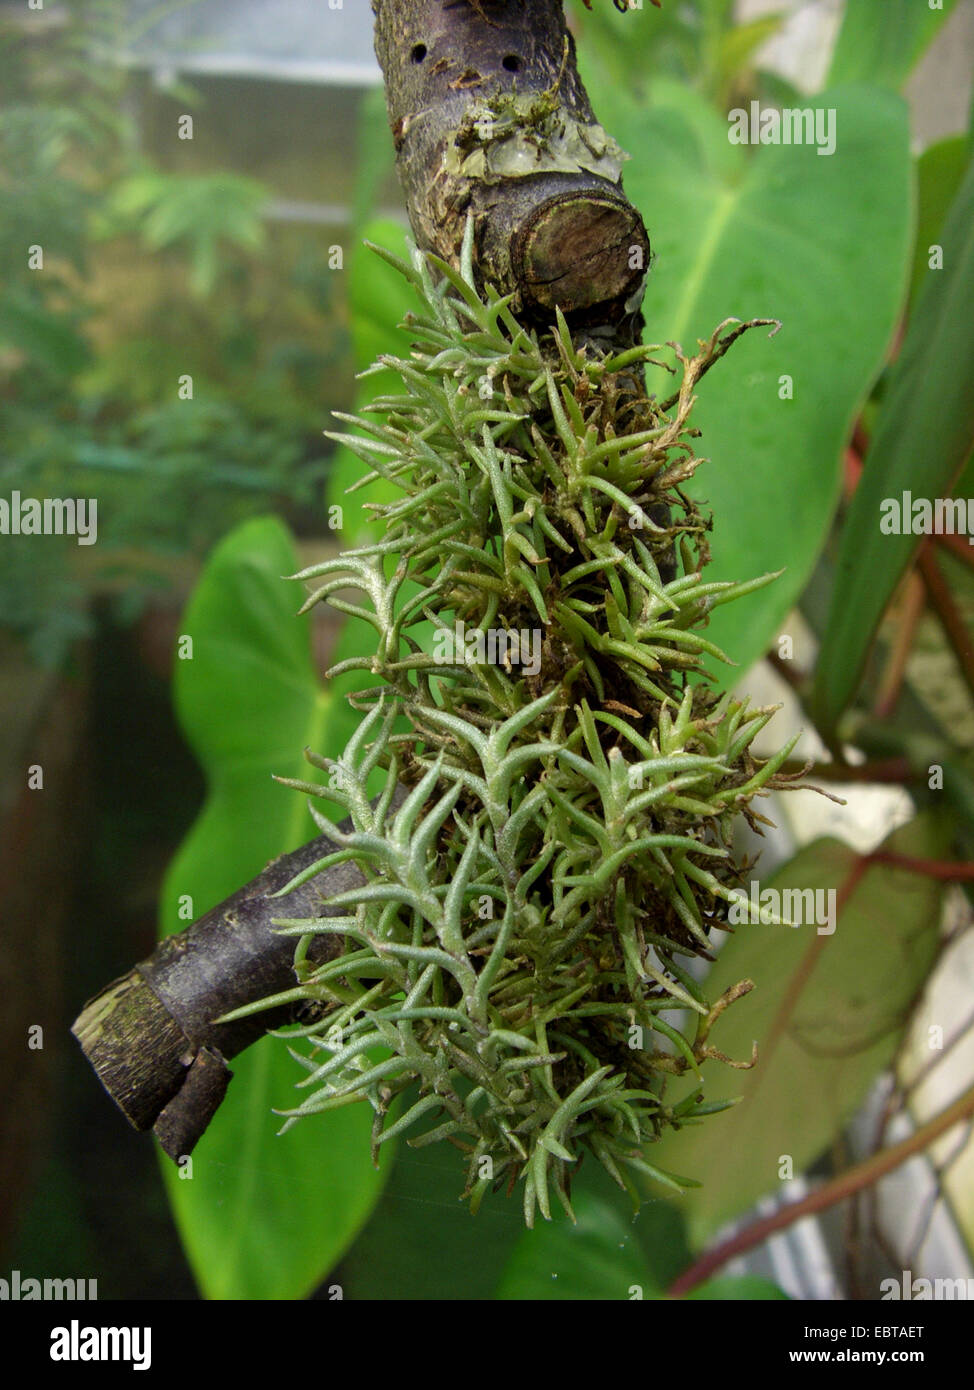 Tillandsia (Tillandsia capillaris), on a branch Stock Photo